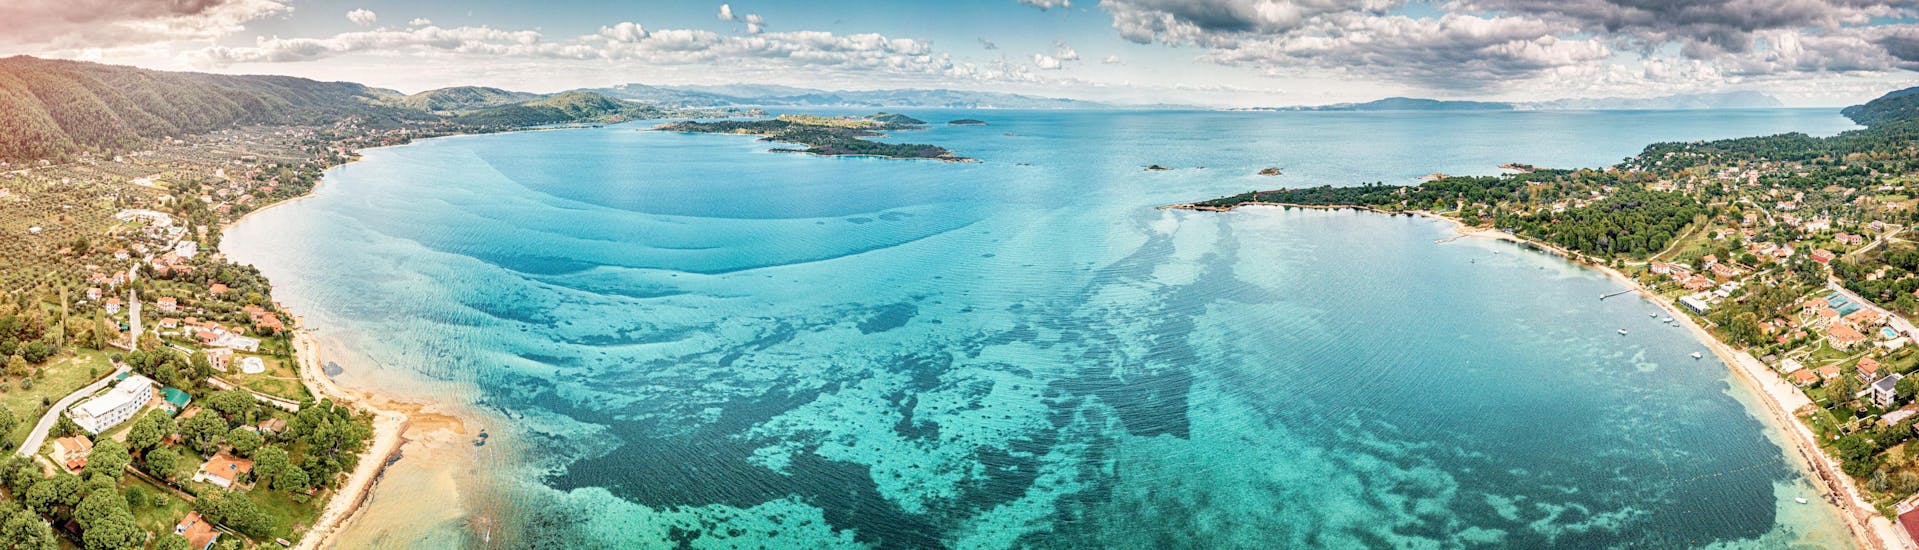 Vista panoramica aerea della laguna azzurra e della baia paradisiaca con i suoi maestosi disegni su una piattaforma marina.